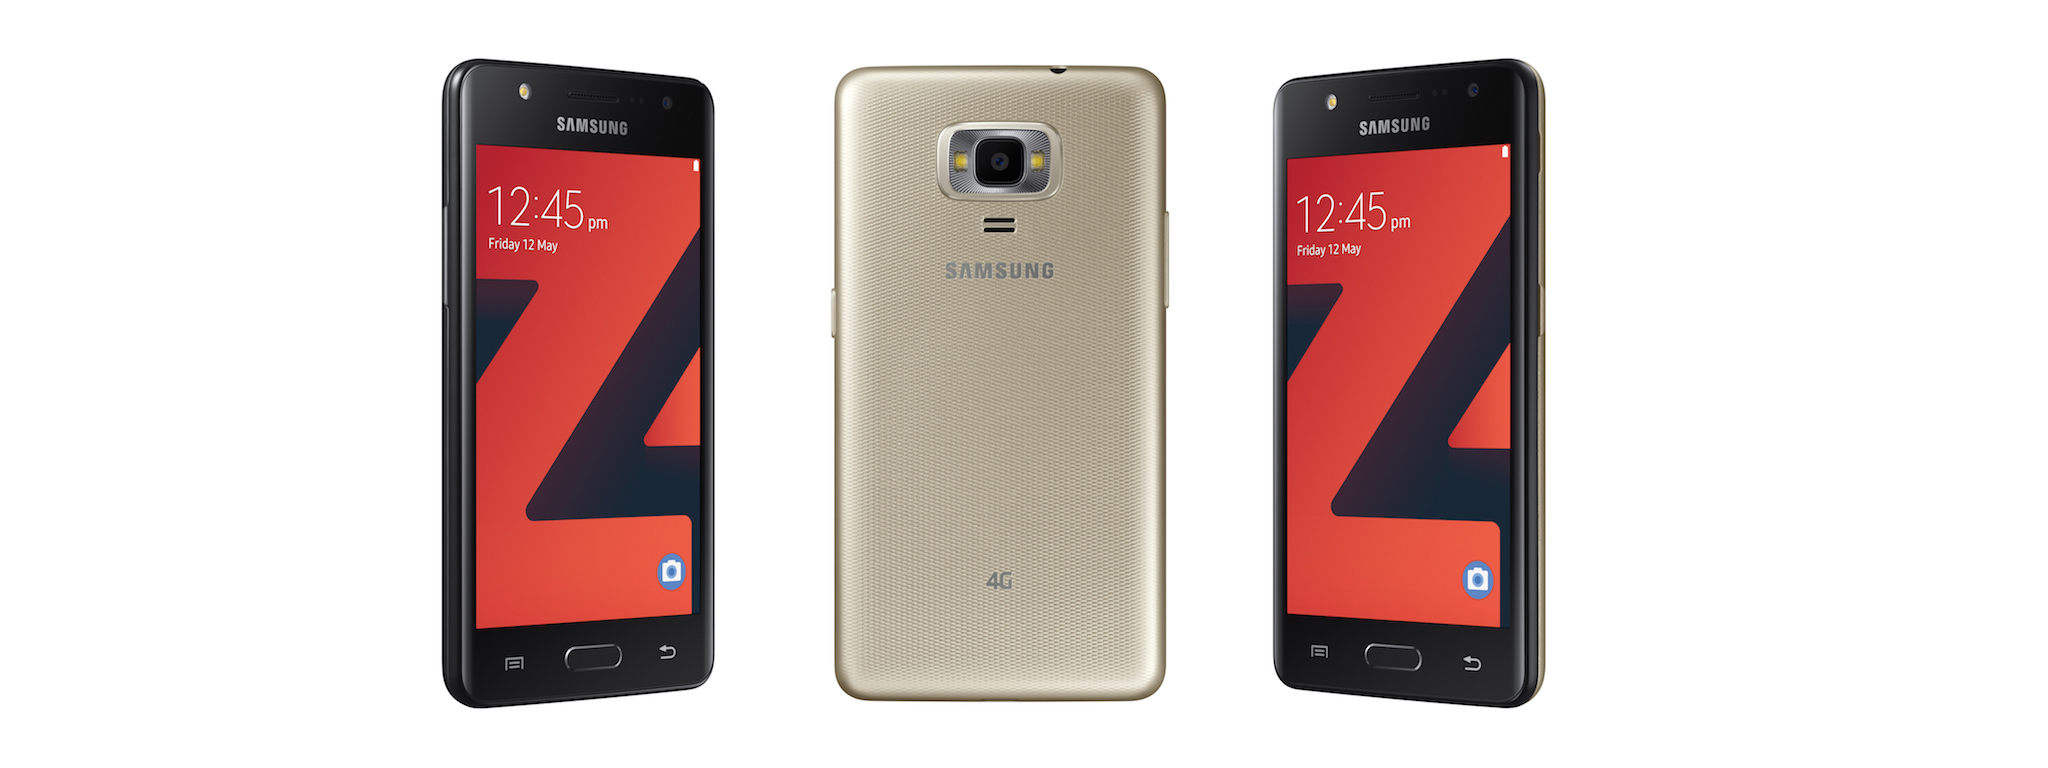 Samsung ra mắt thêm một smartphone Tizen với màn hình 4"5, giá dưới 100 USD